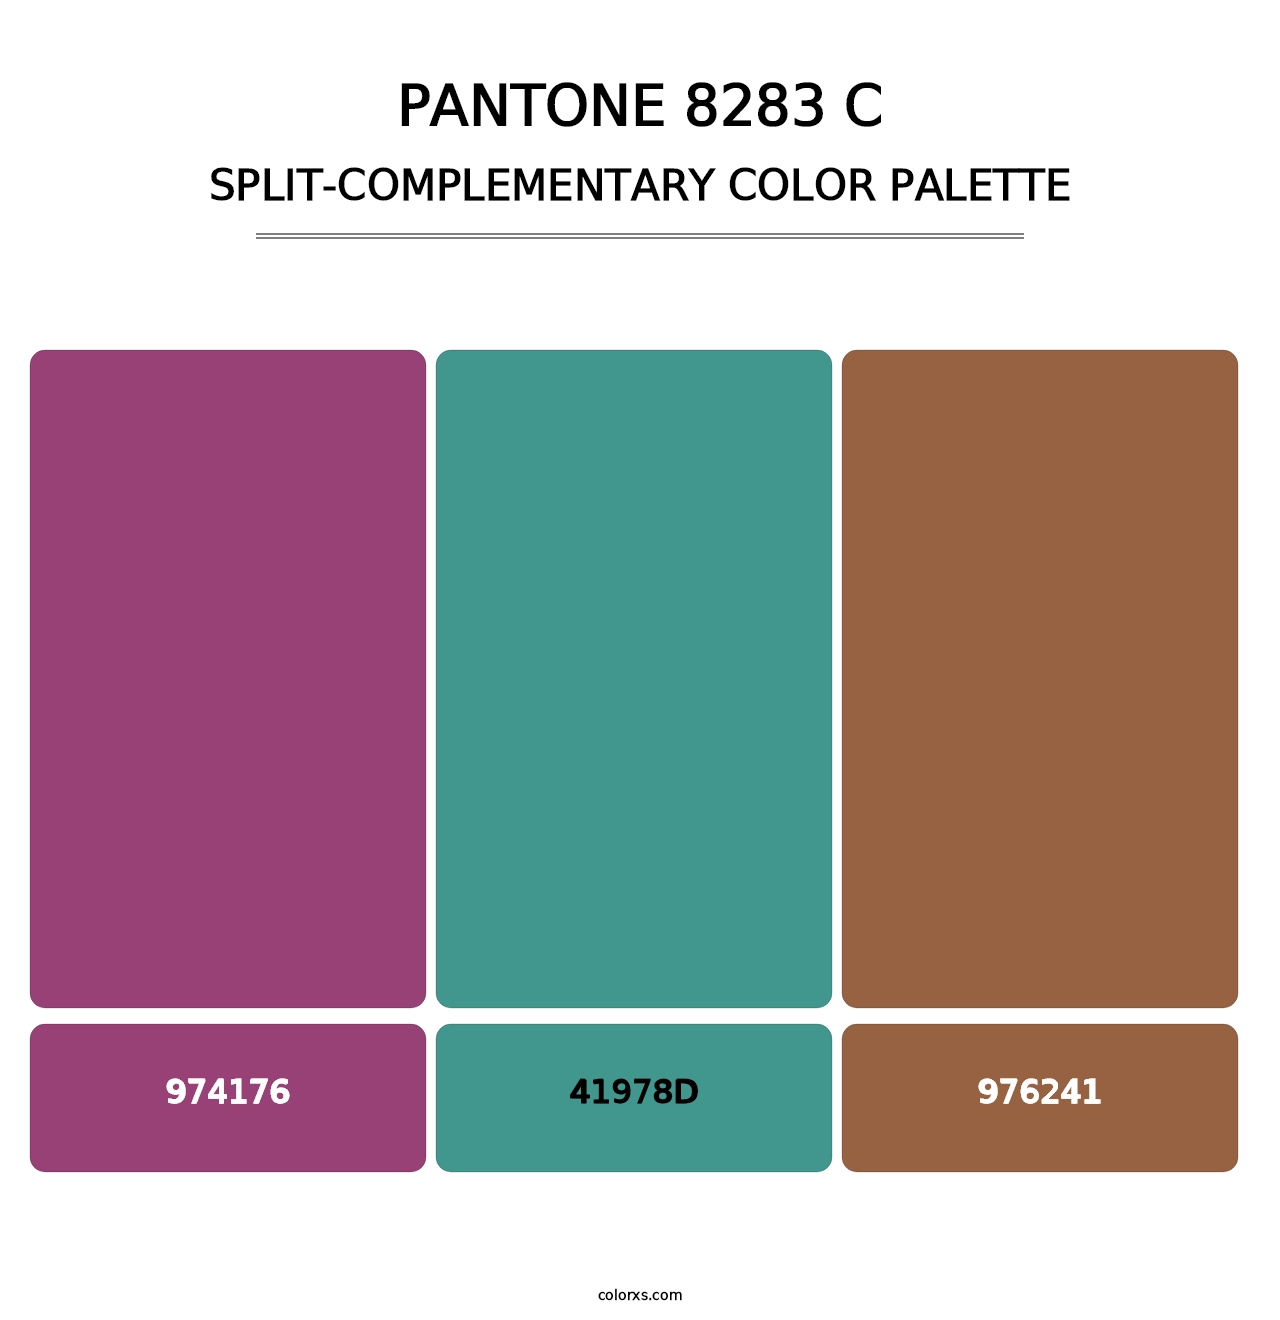 PANTONE 8283 C - Split-Complementary Color Palette